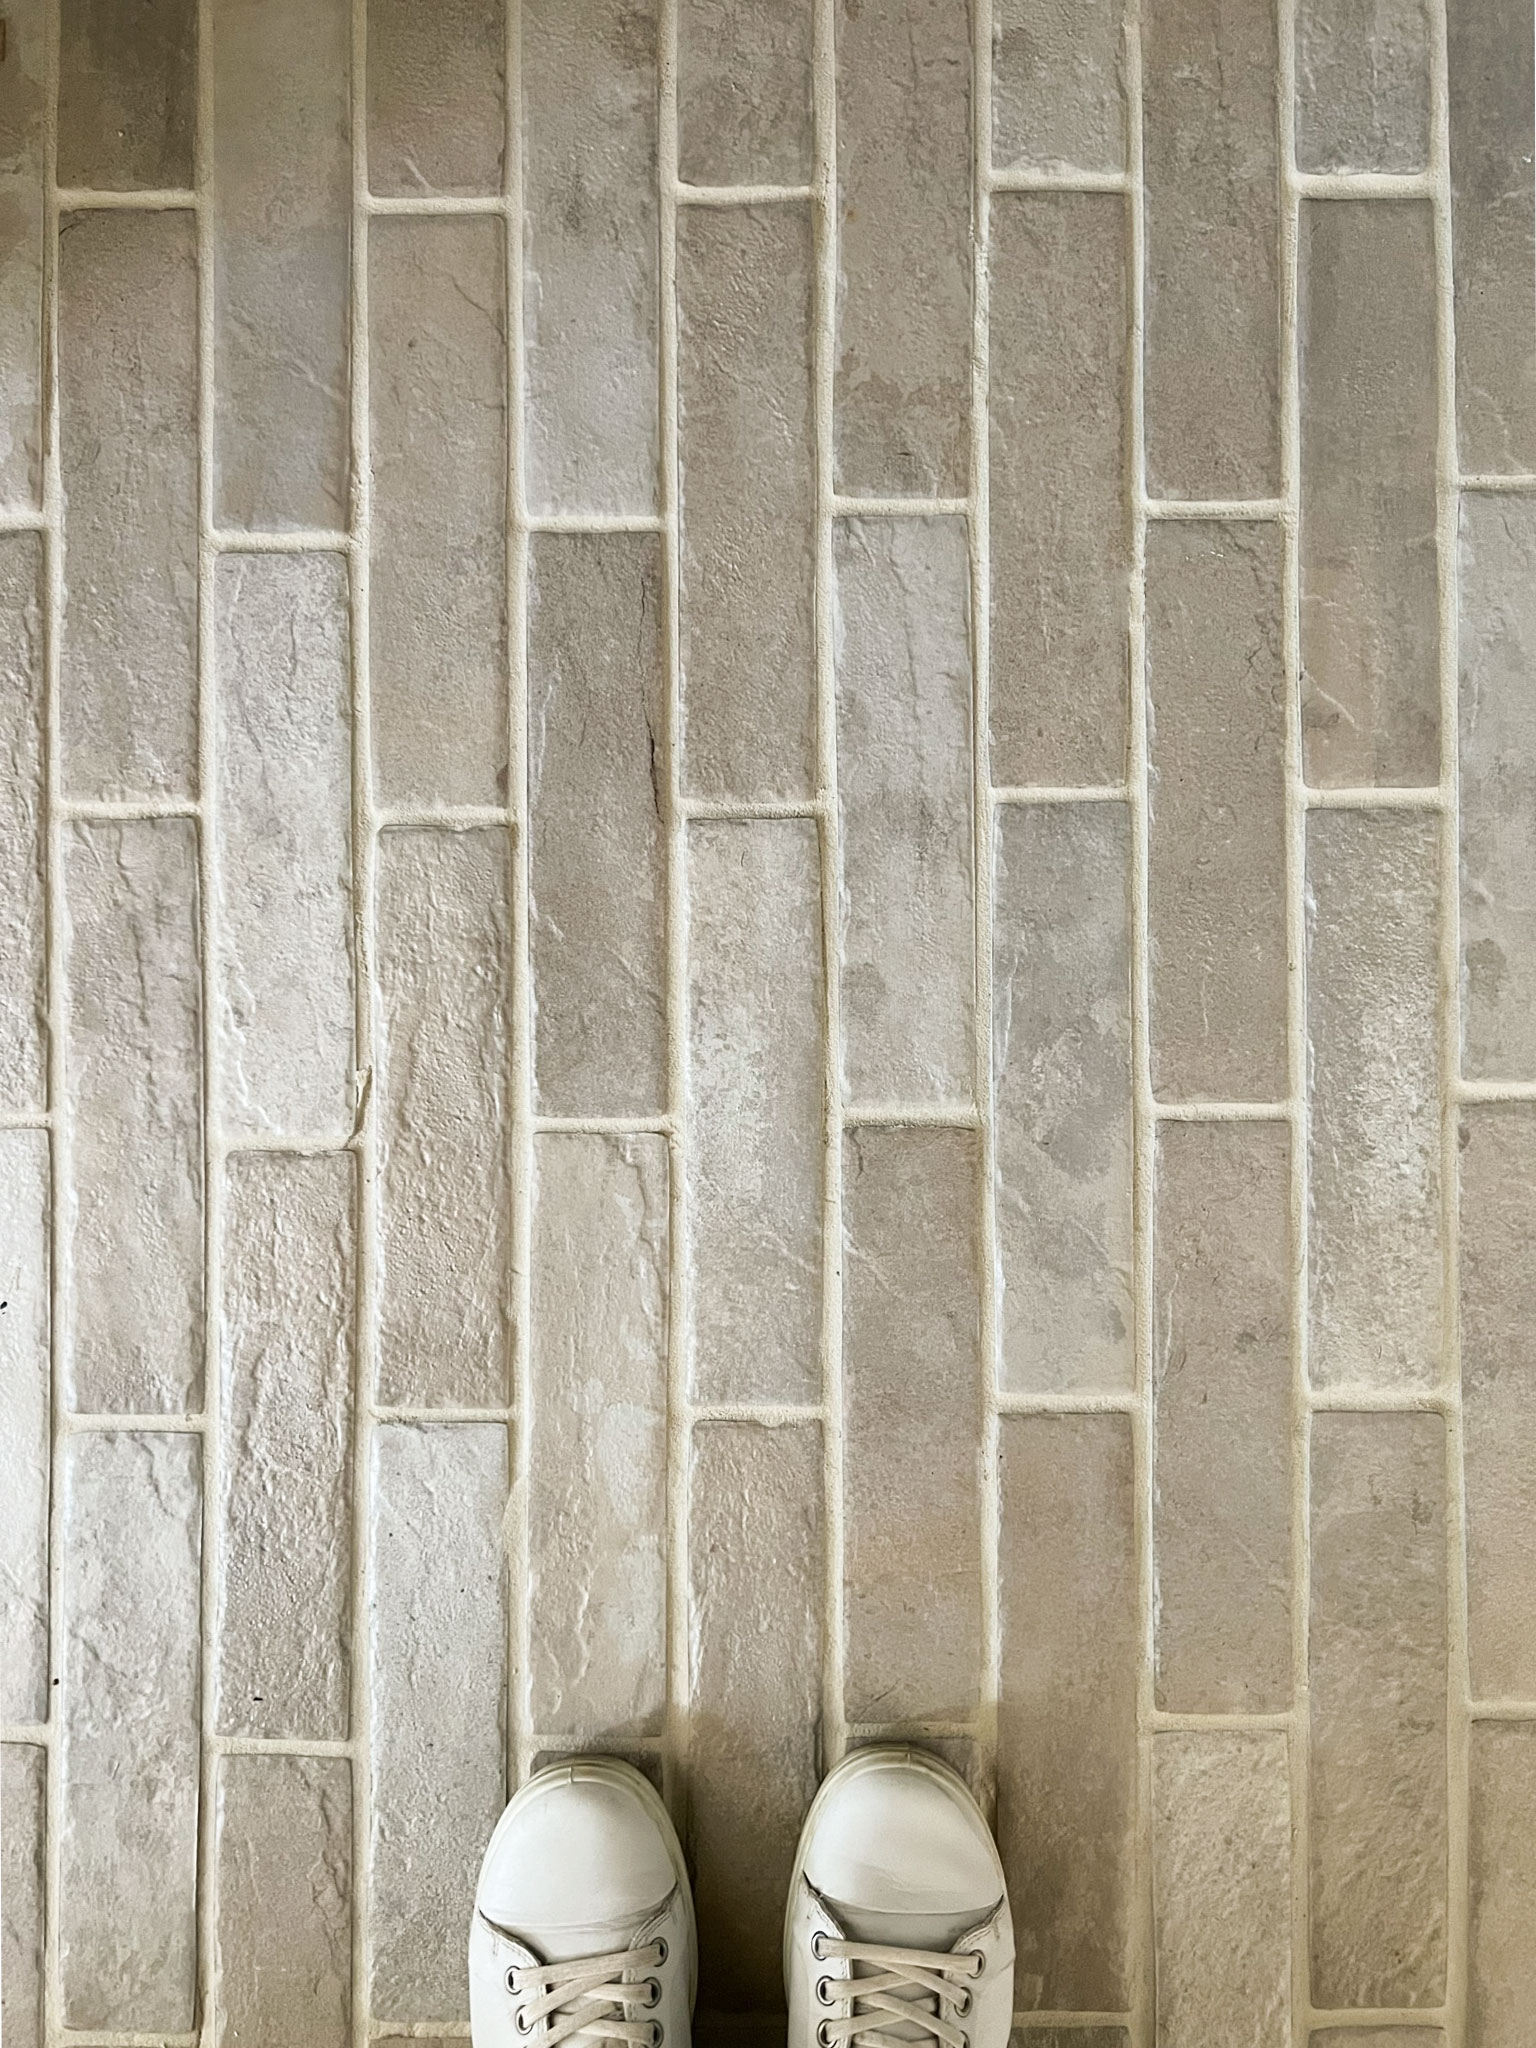 DIY Floor Tile Install – My Top Tips!